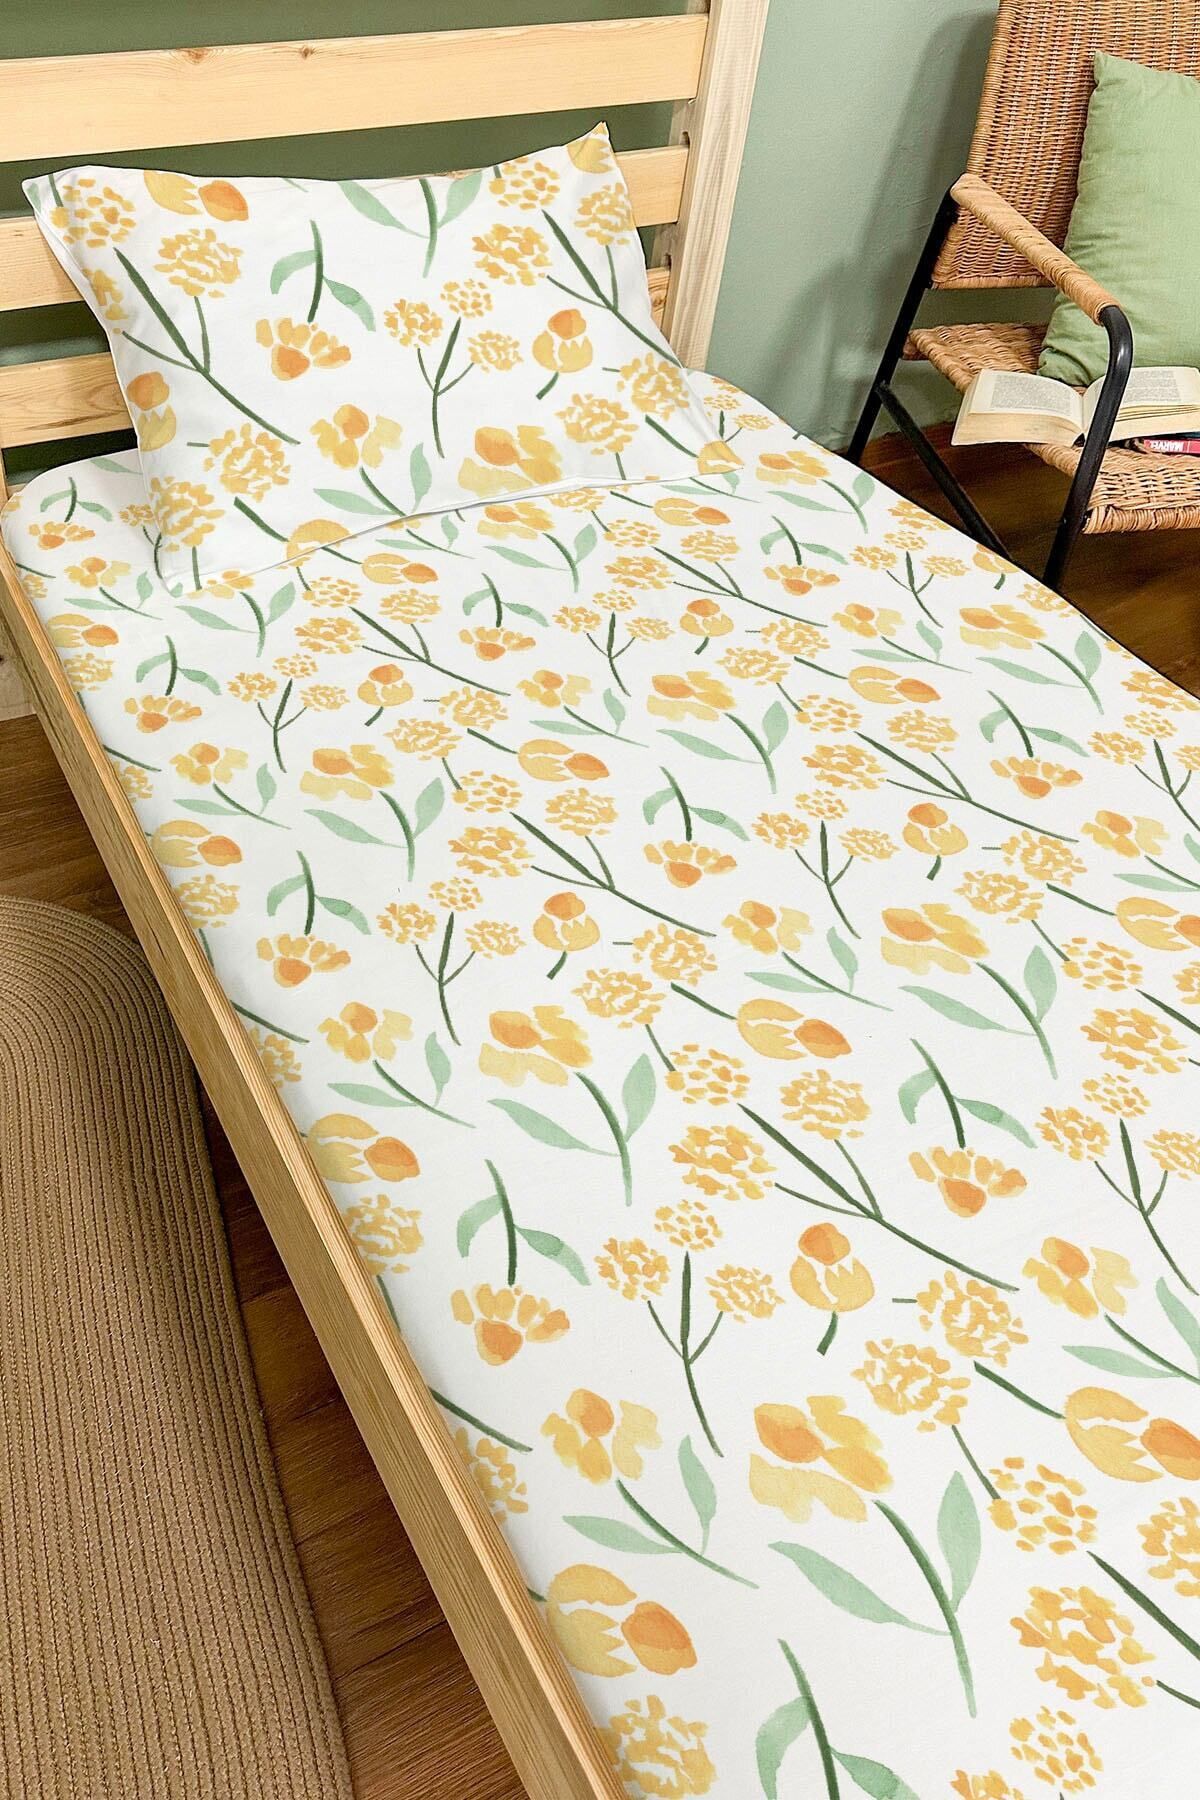 Tuğba Kuğu Lastikli Çarşaf Seti (90X190 YÜKSEKLİK 20) - Iconic Serisi - Sarı Bahar Çiçekleri